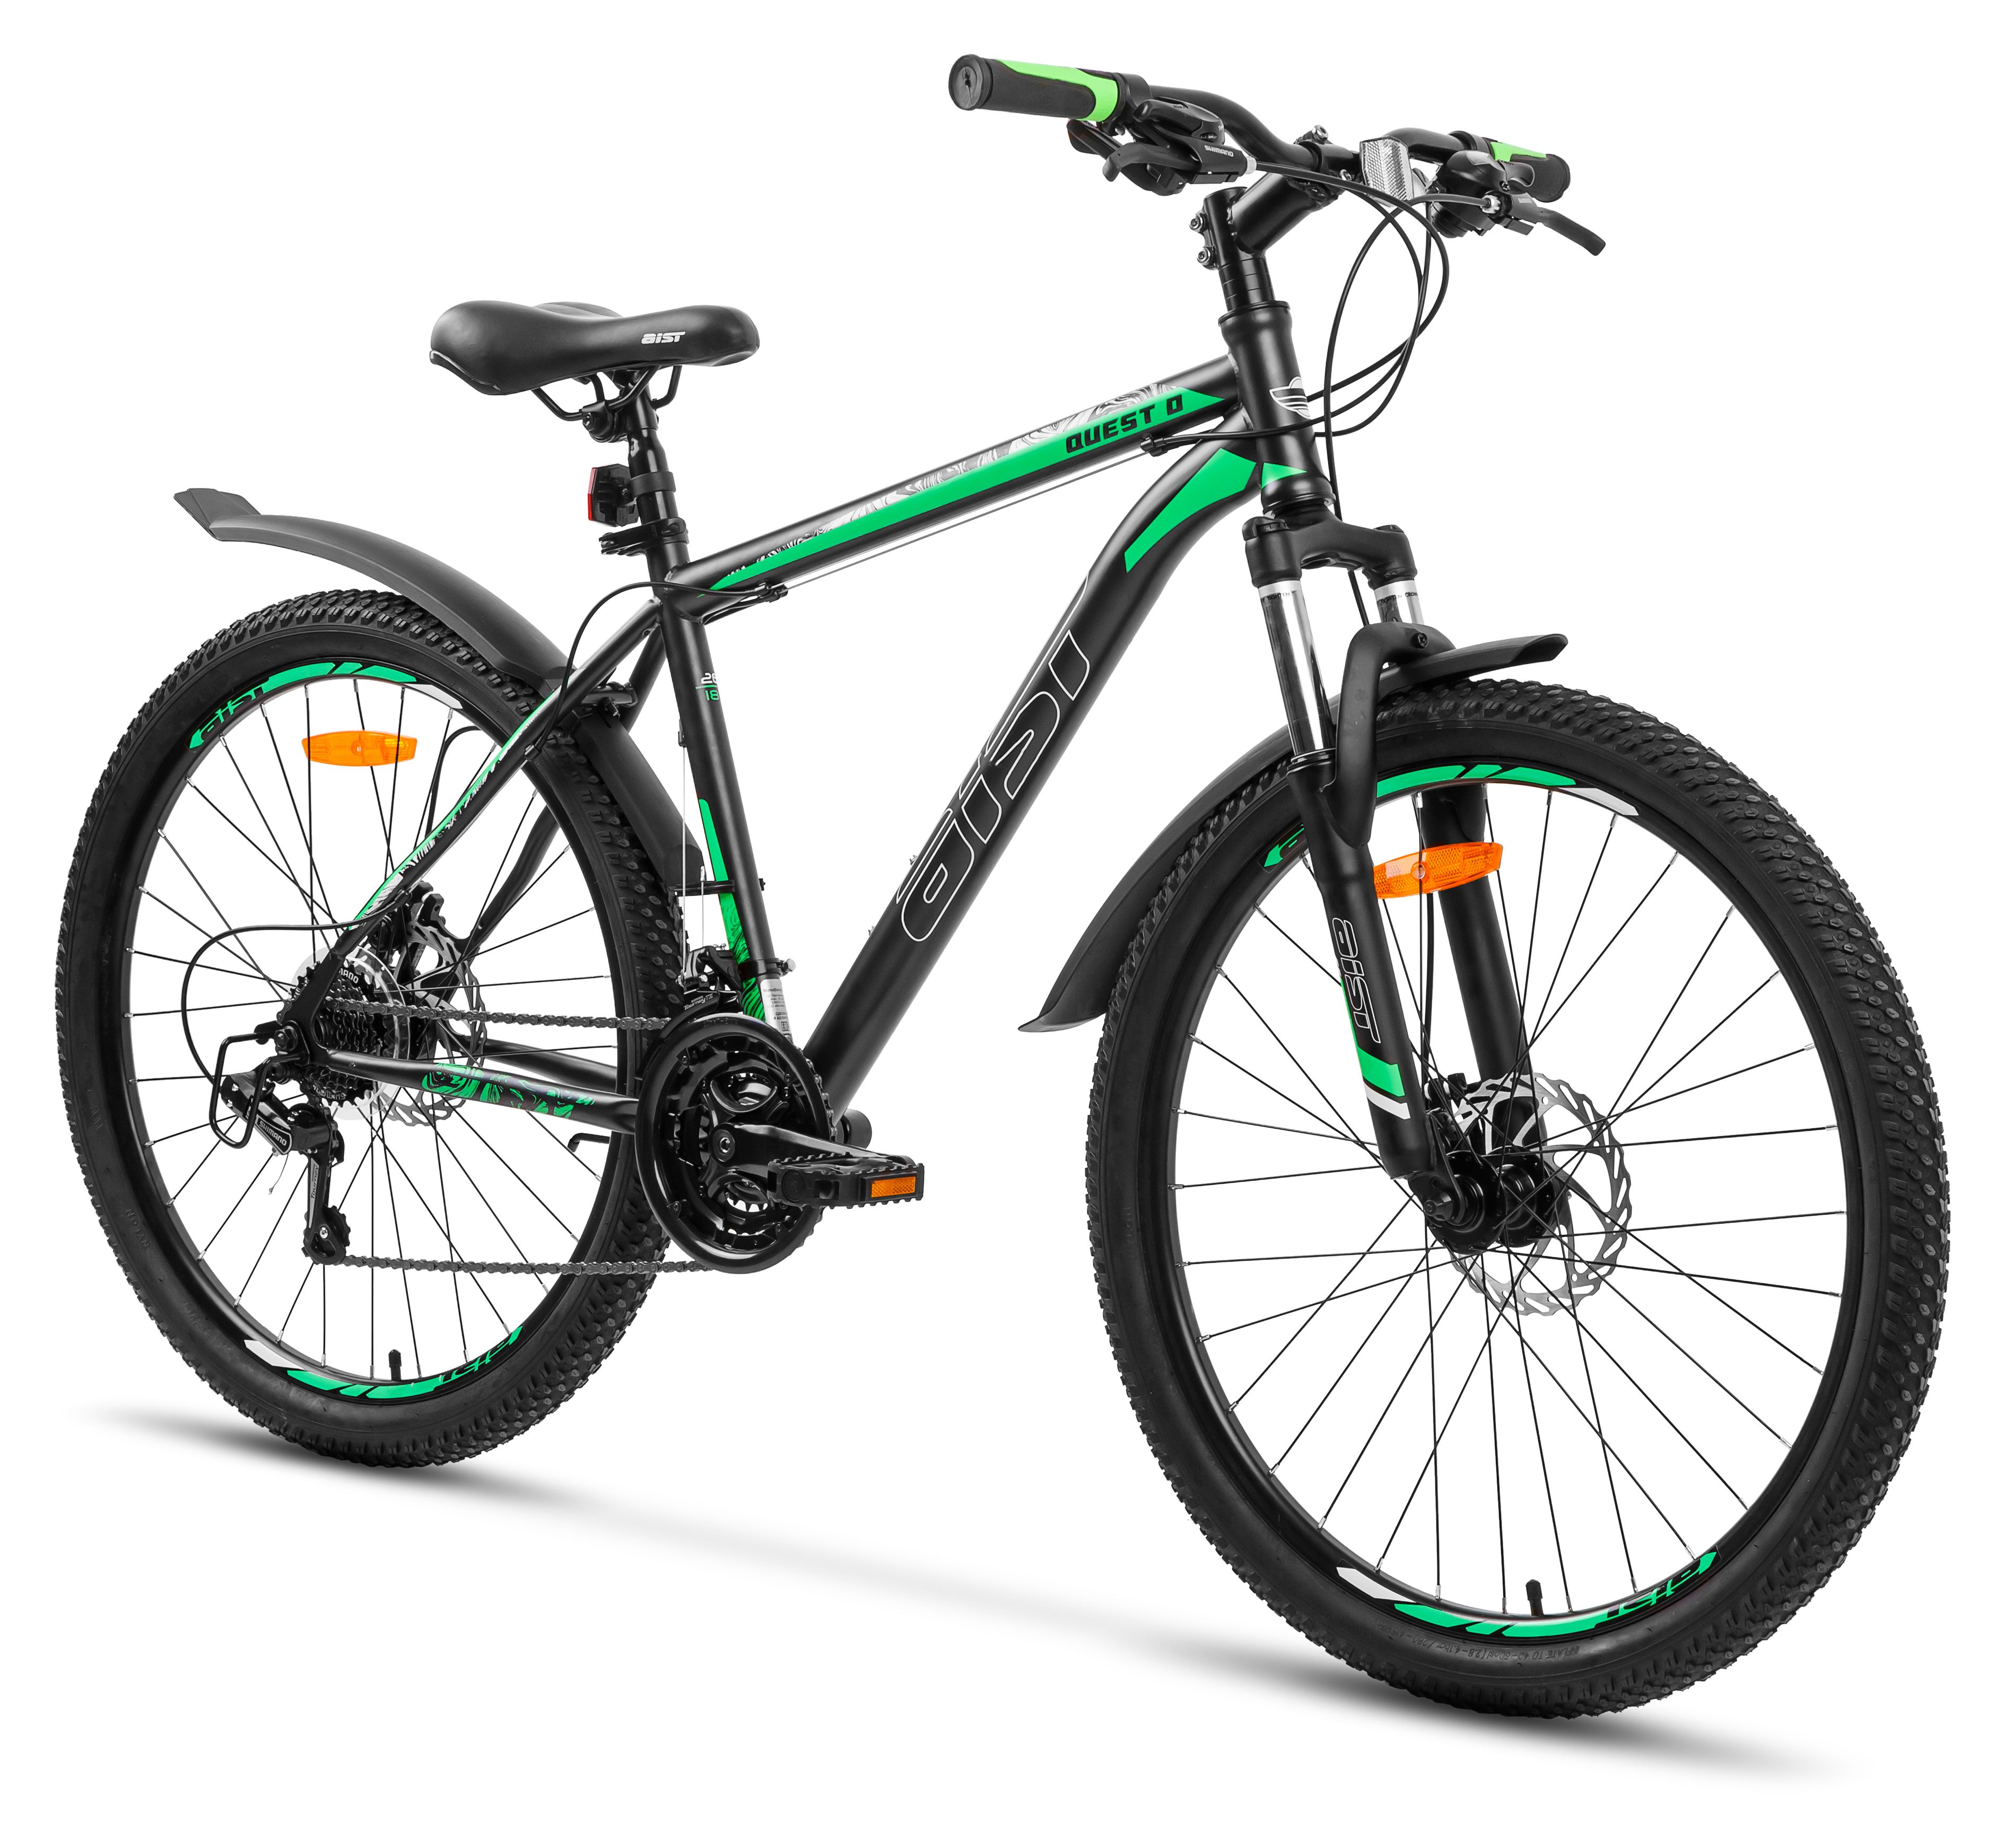 Велосипед AIST Quest 26 размер рамы 16 цвет черно-зеленый